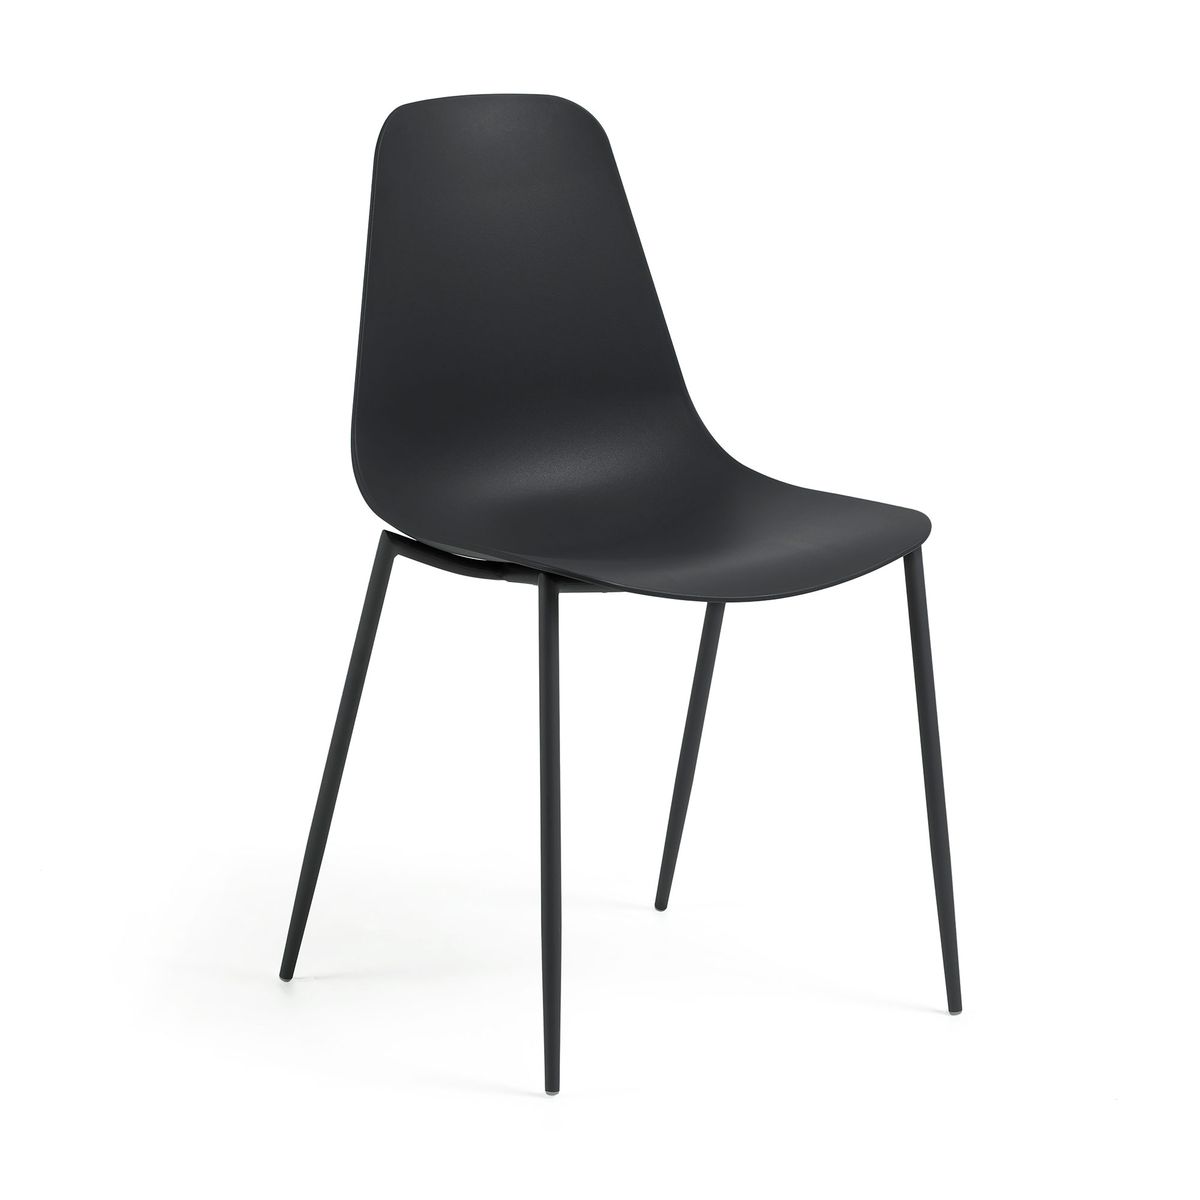 Des chaises design